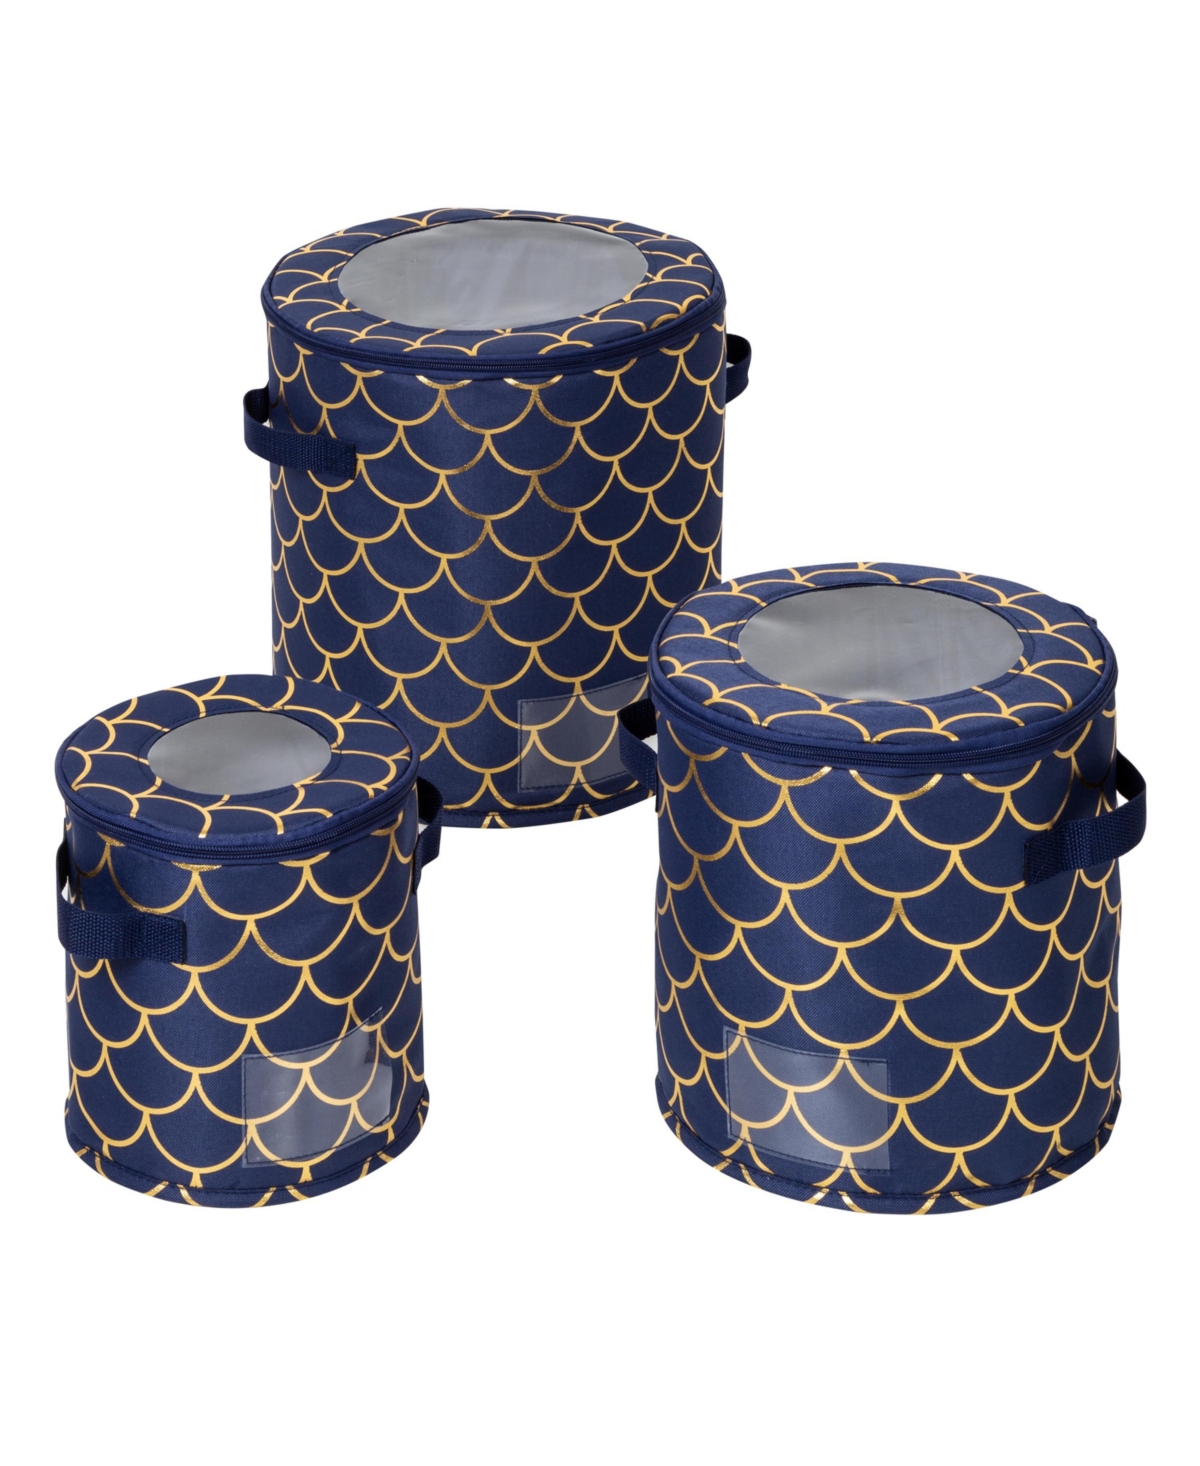 Round Dinnerware Golden Scallop Print Storage Box, Set of 3 - Navy Blue